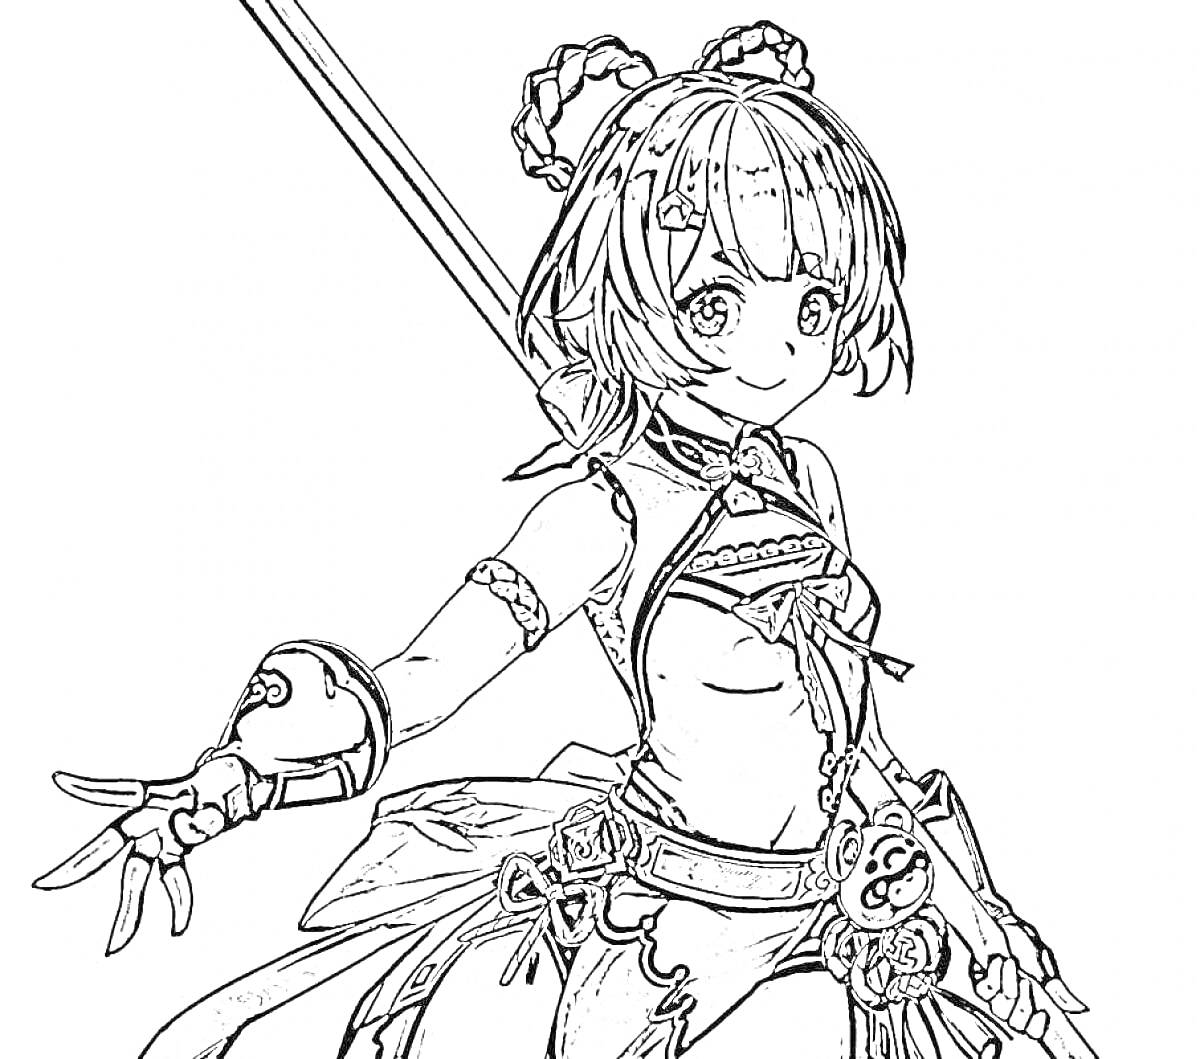 Раскраска Девушка с мечом из Genshin Impact, характерная прическа с украшениями, костюм с декоративными элементами